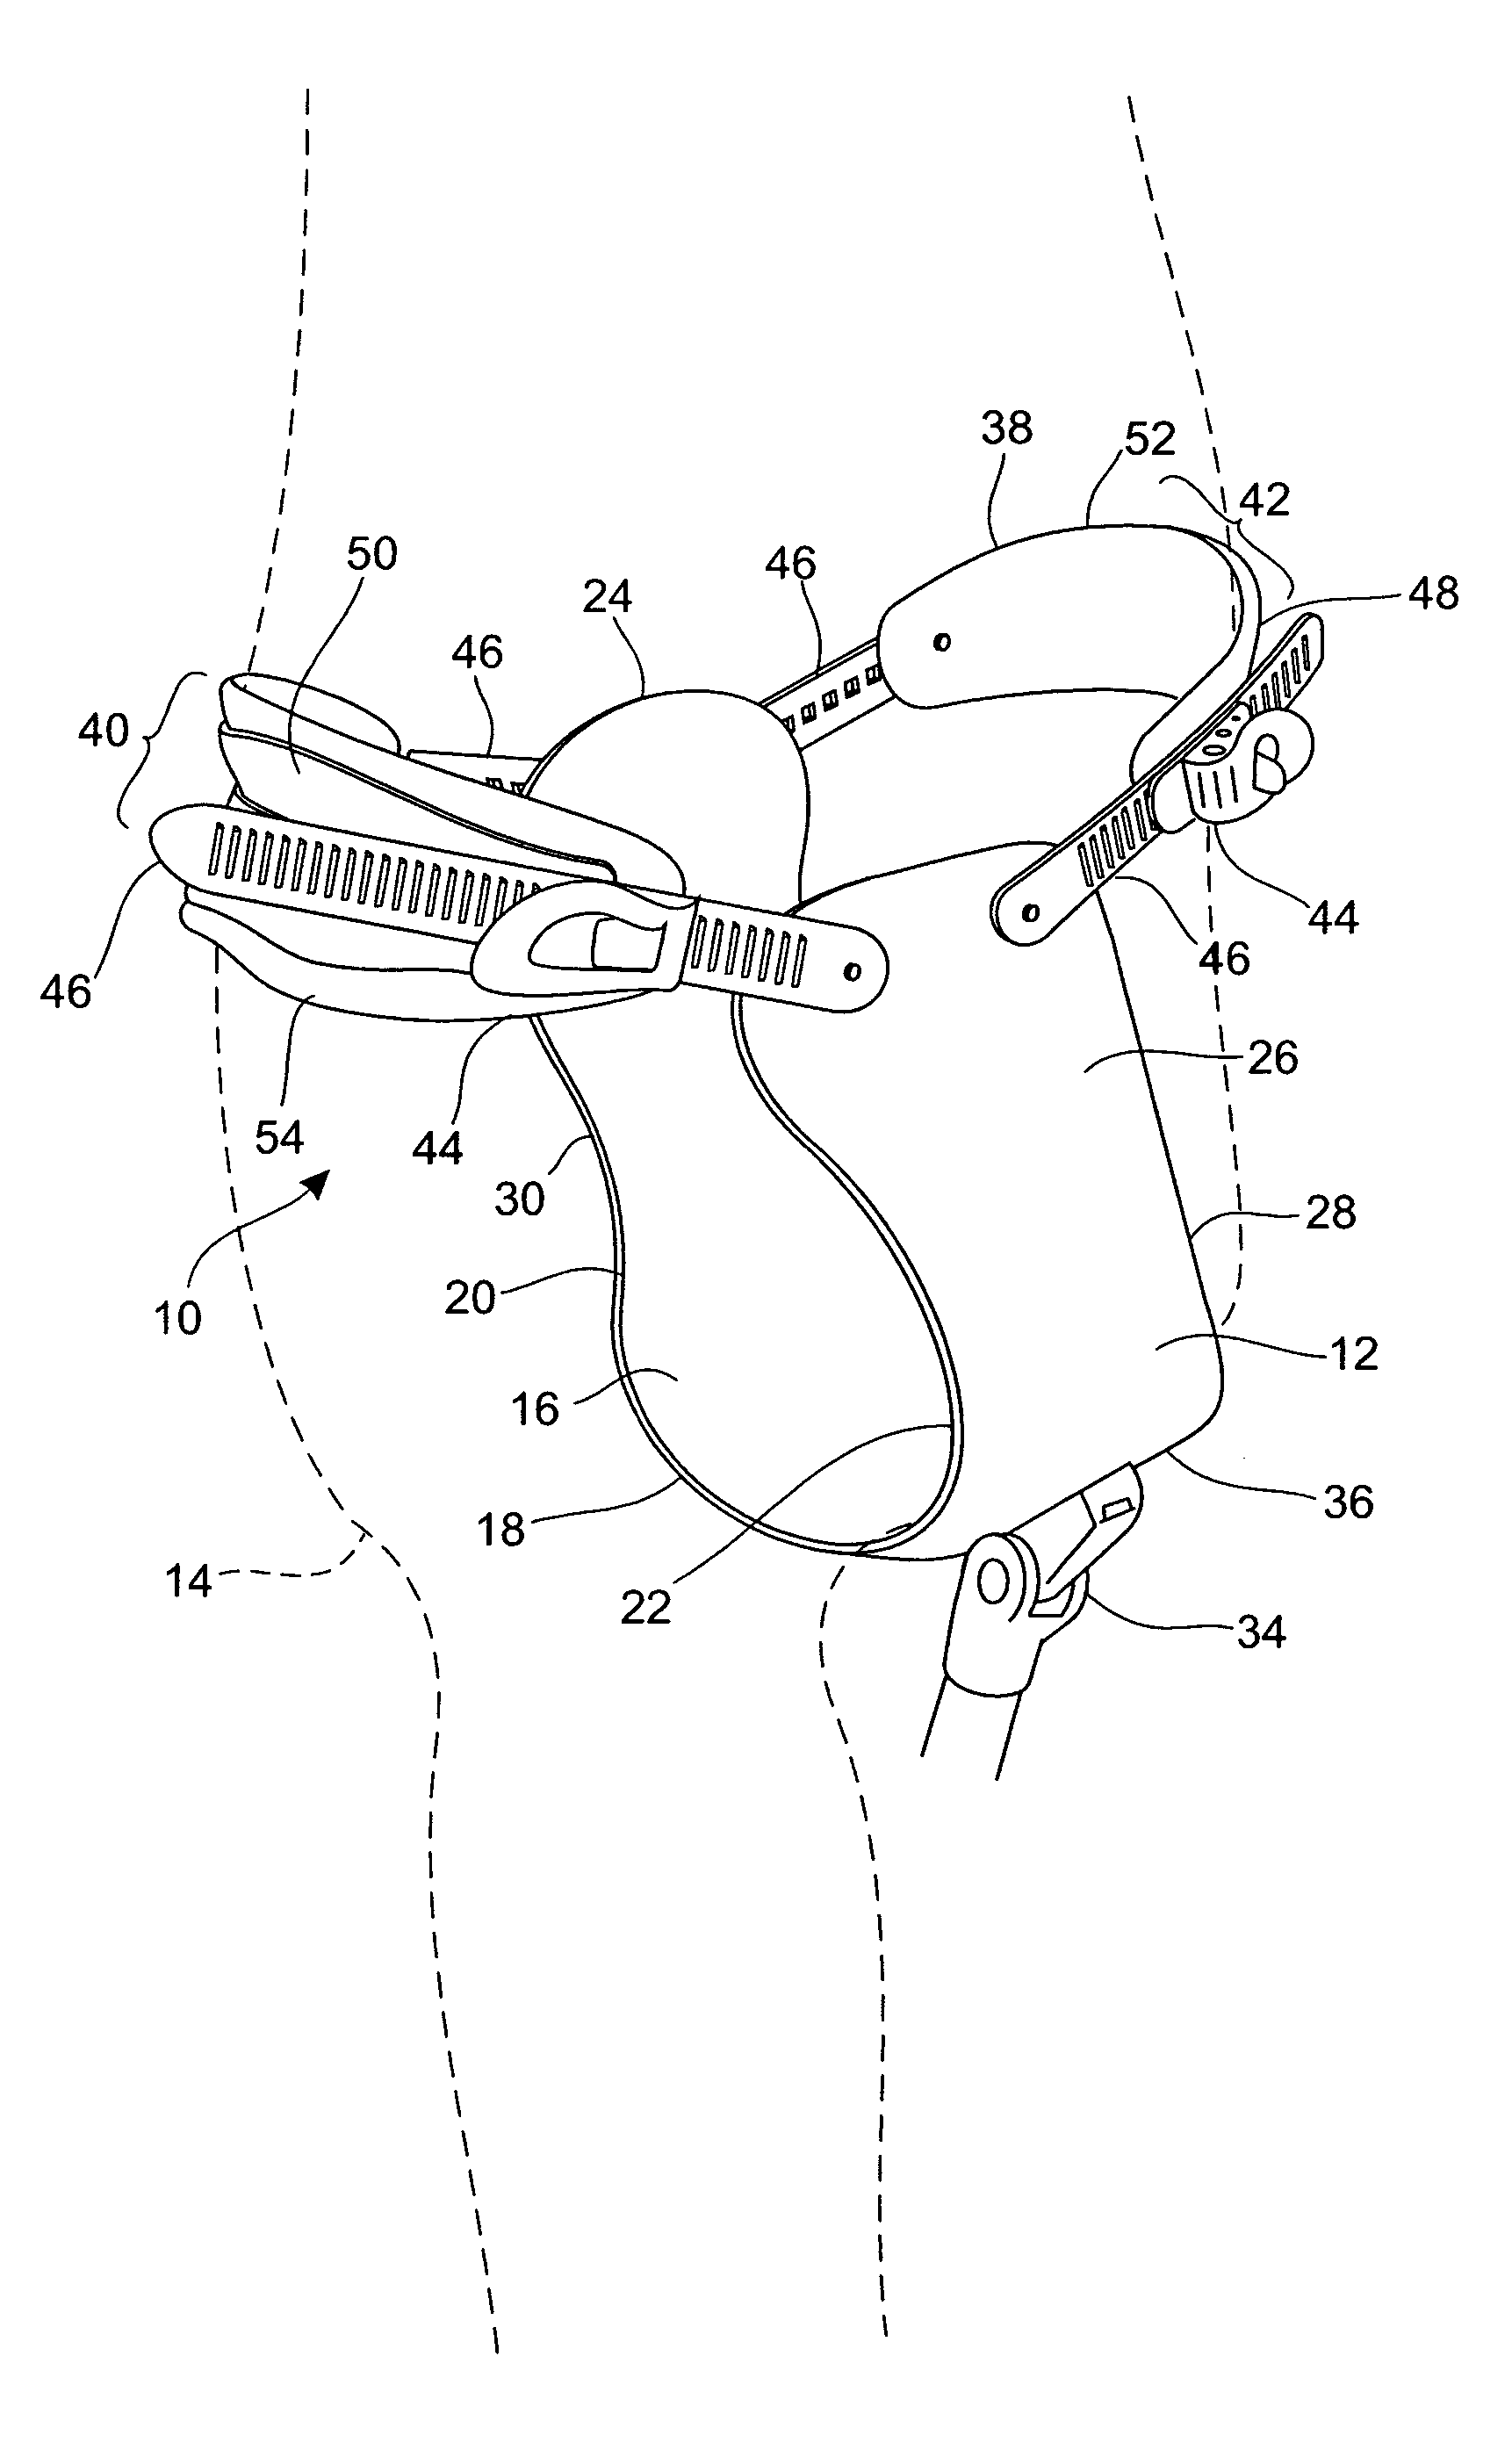 Anatomically configured hip level prosthetic socket system